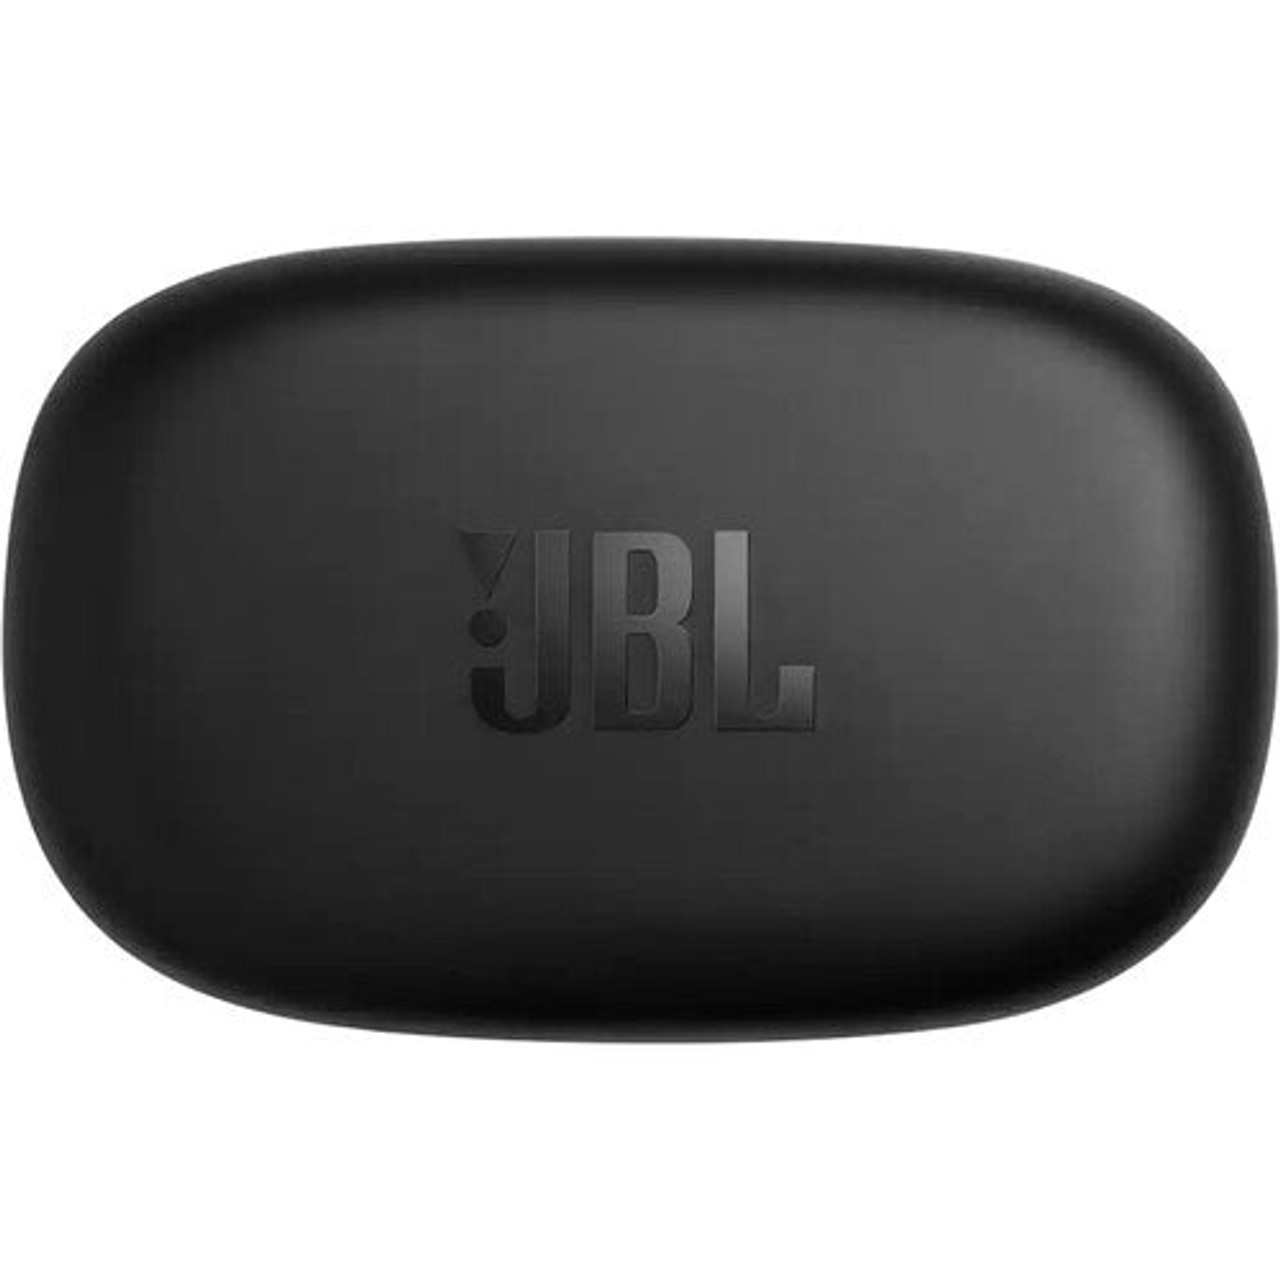 JBL JBLENDURPEAKIIBKAM-Z Endurance PEAK II True Wireless In-Ear Sport Headphones Black - Certified Refurbished